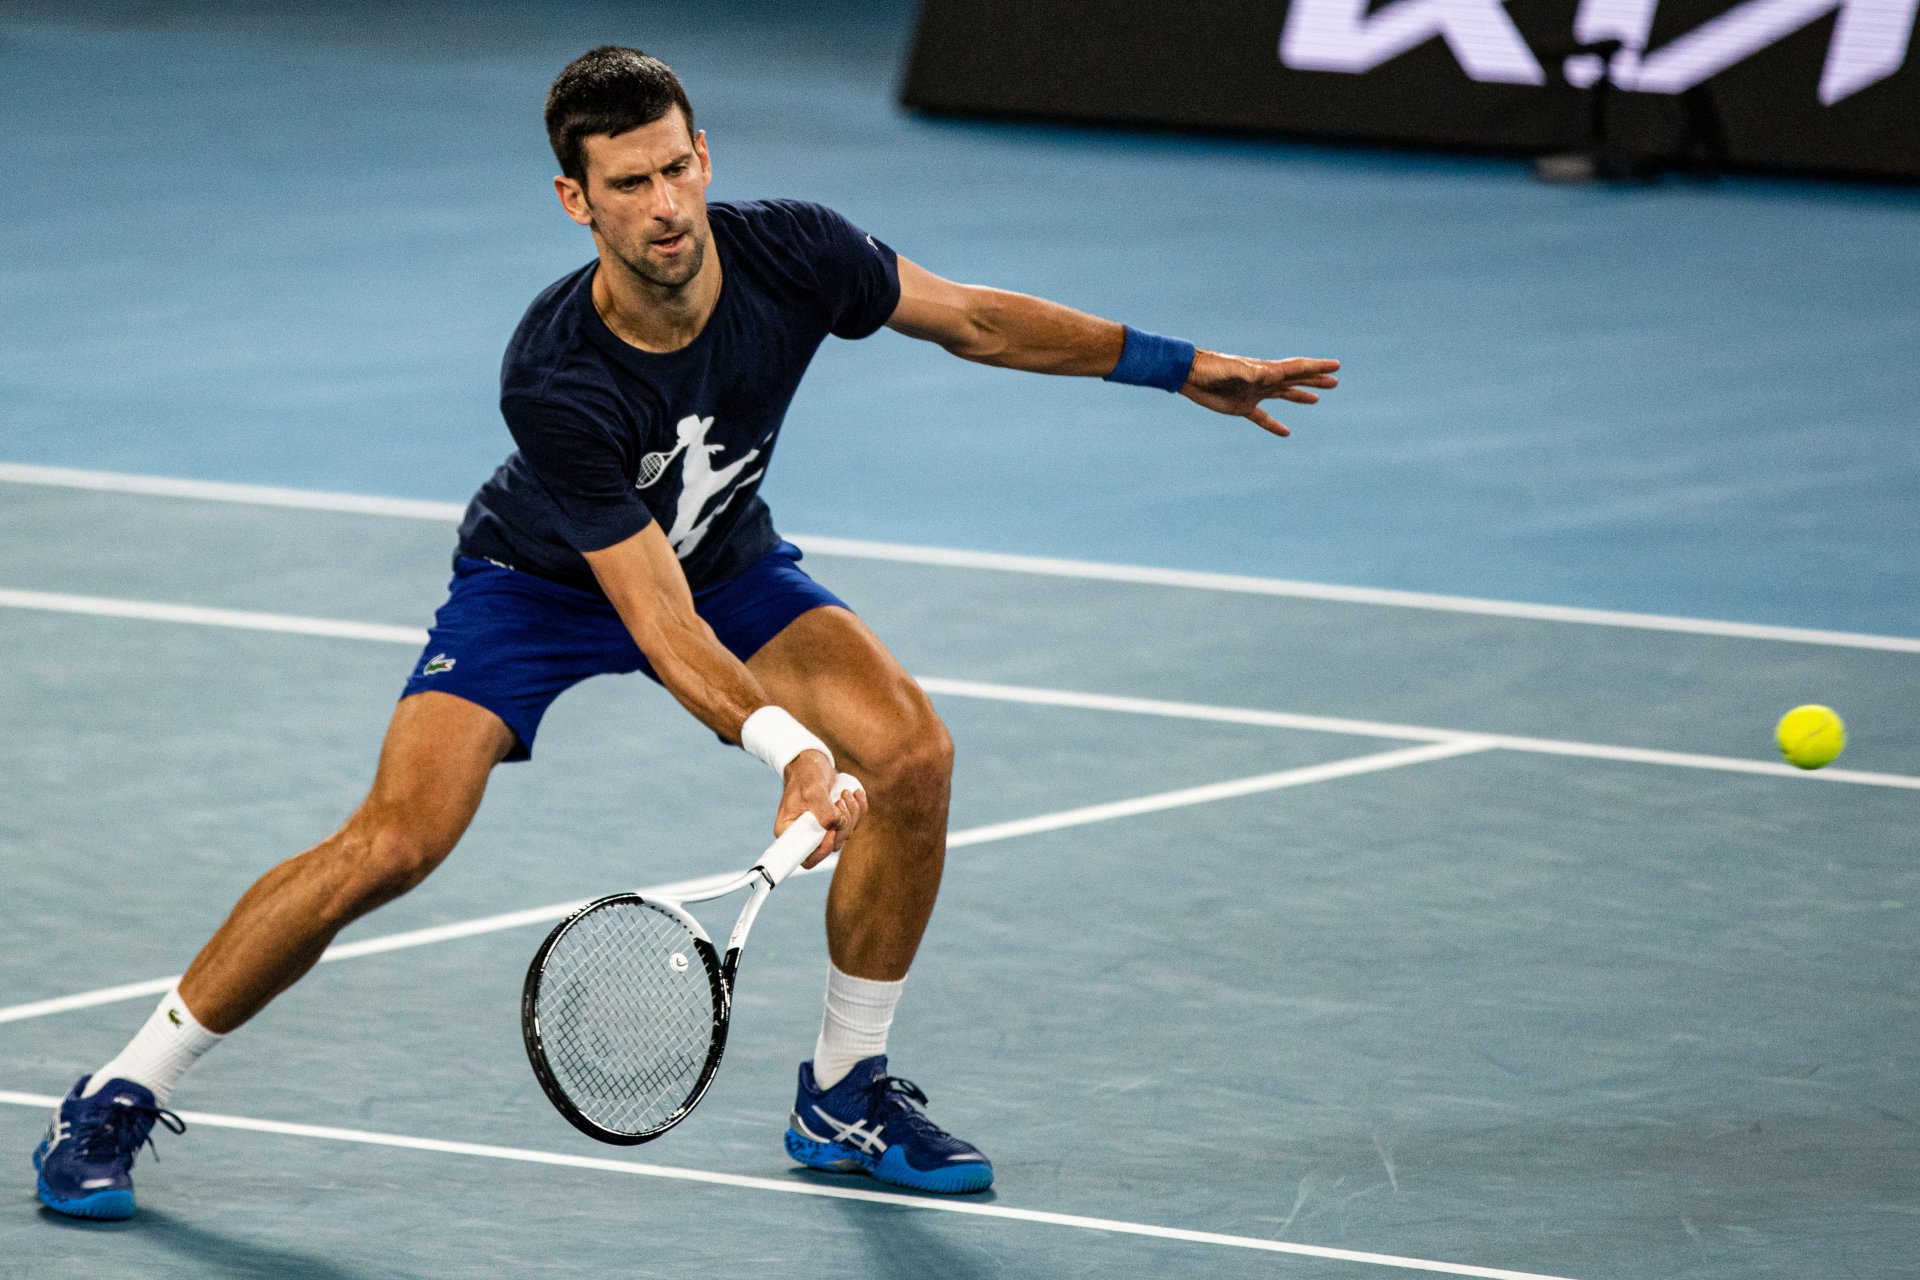 Sau khi thắng kiện tại tòa án, Djokovic đã được phép rời khỏi trung tâm giam giữ và nhập cảnh để tham dự giải Australia Open. Quyết định hủy visa từ chính phủ Australia có thể khiến Djokovic bị trục xuất. Ảnh: Reuters.